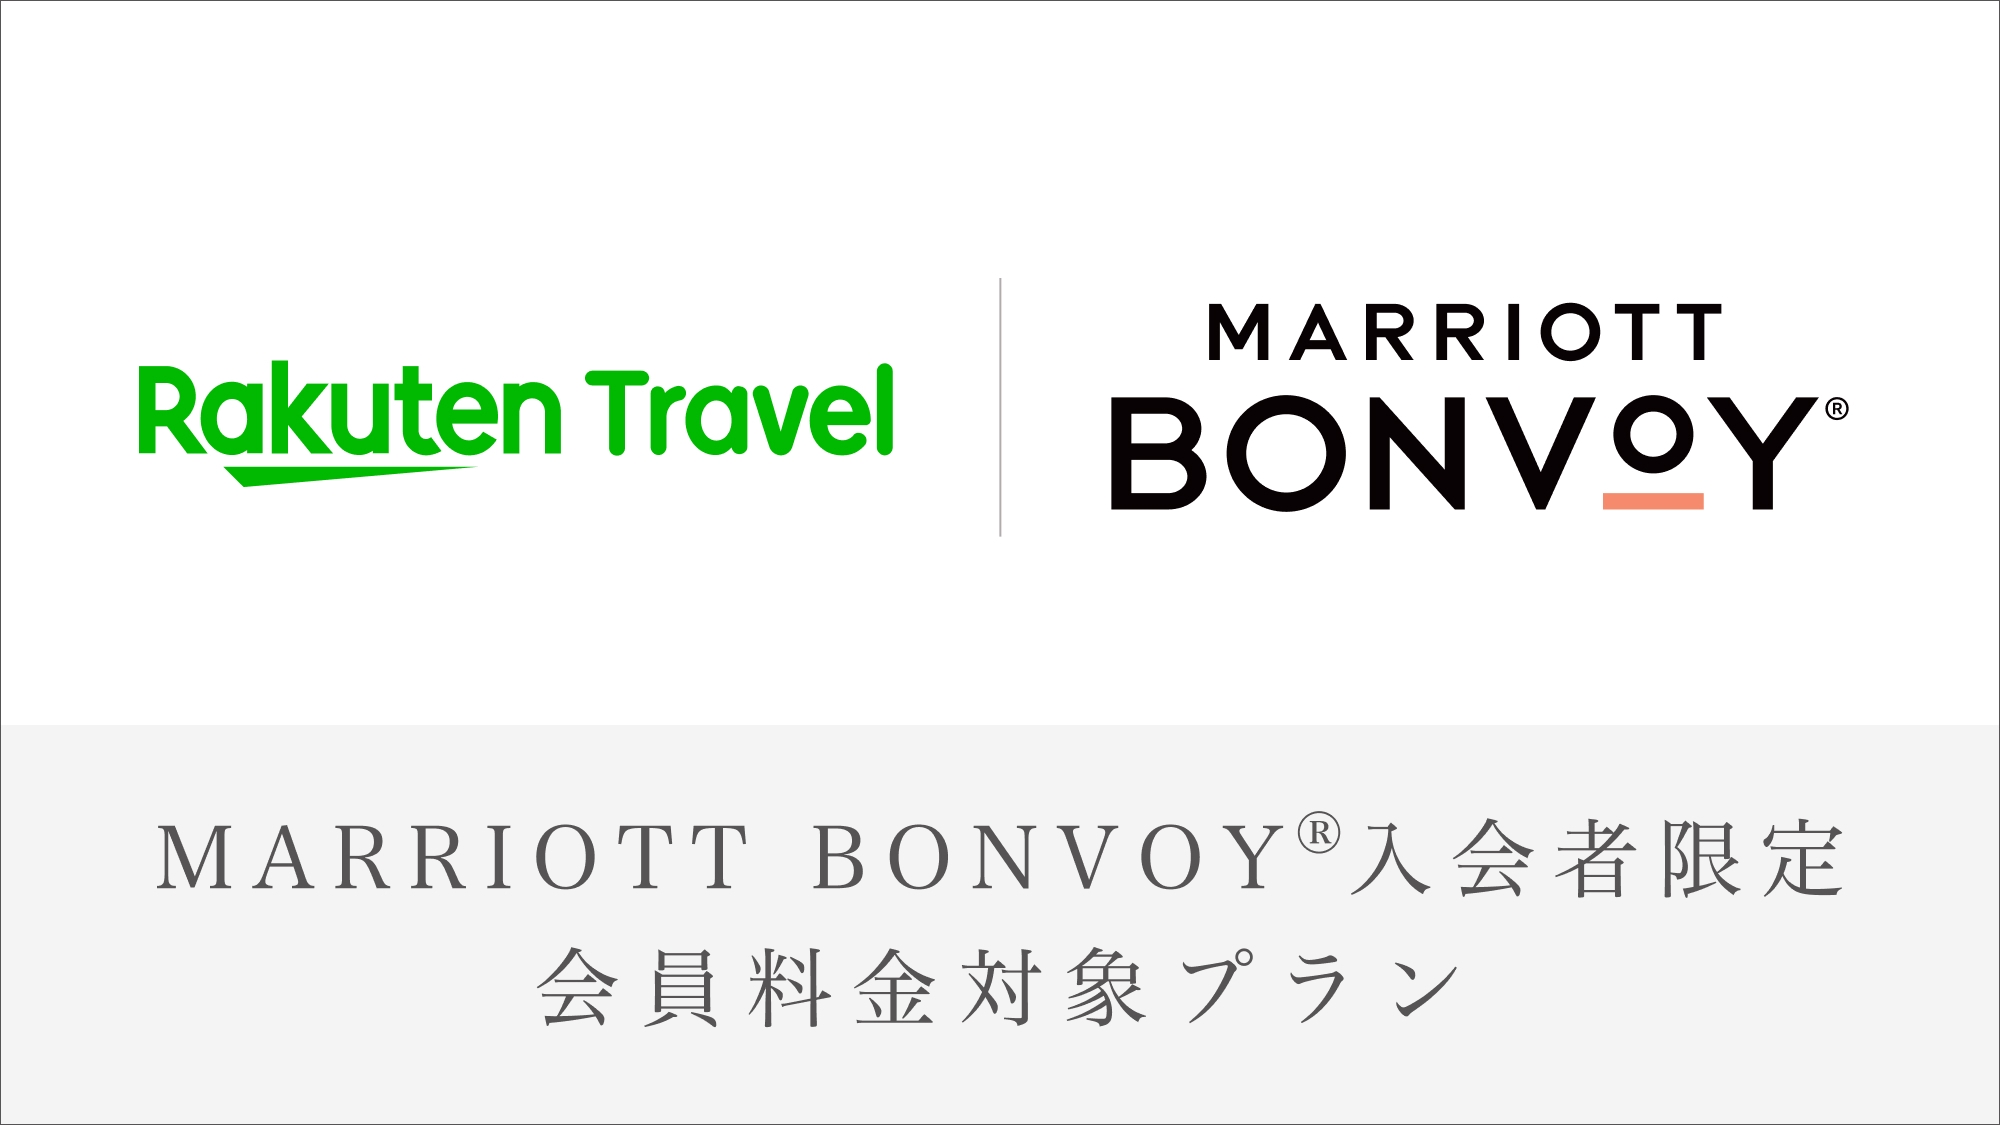 【Marriott Bonvoy会員対象プラン】3 days stay 〜連泊ステイ〜 (朝食付)